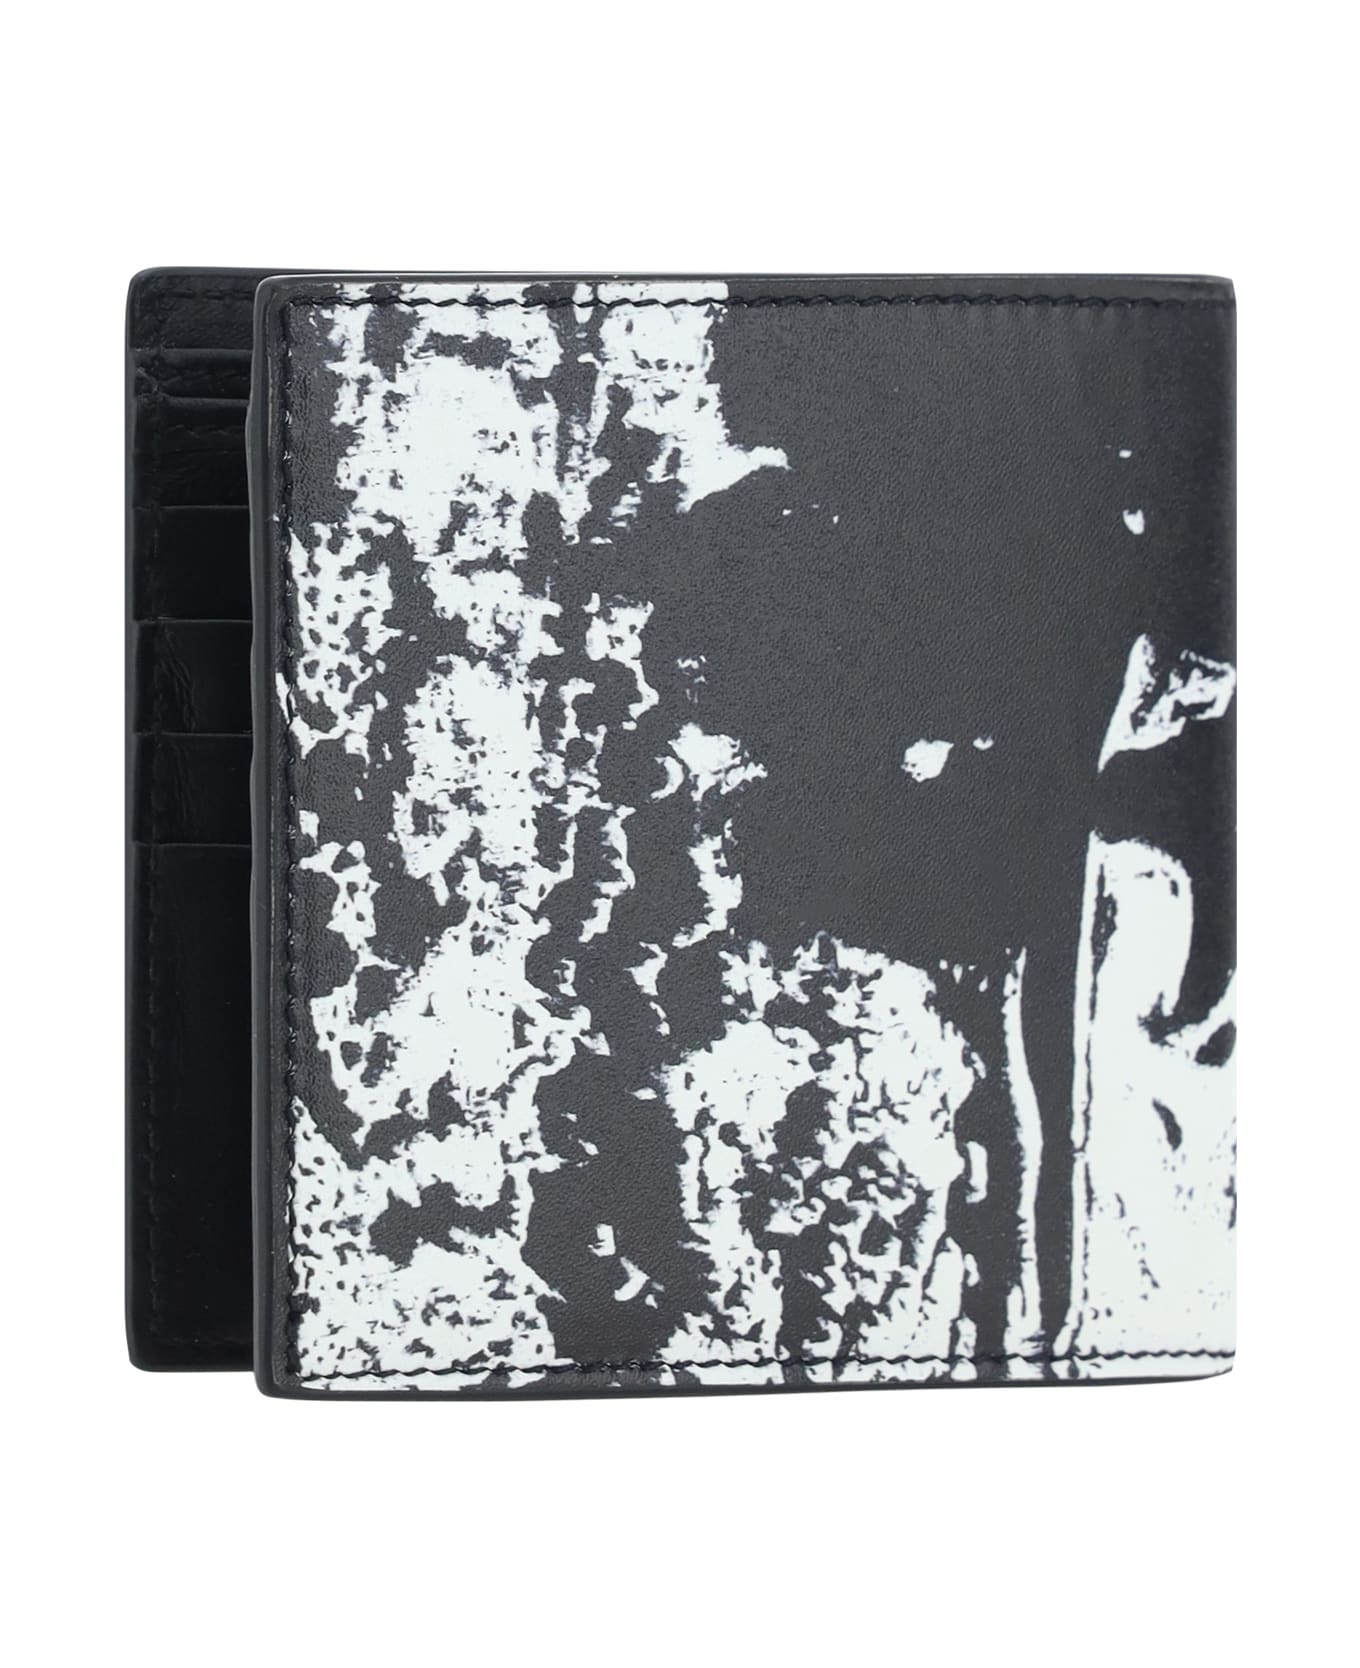 Alexander McQueen Graffiti Logo Bi-fold Wallet - Black/white 財布